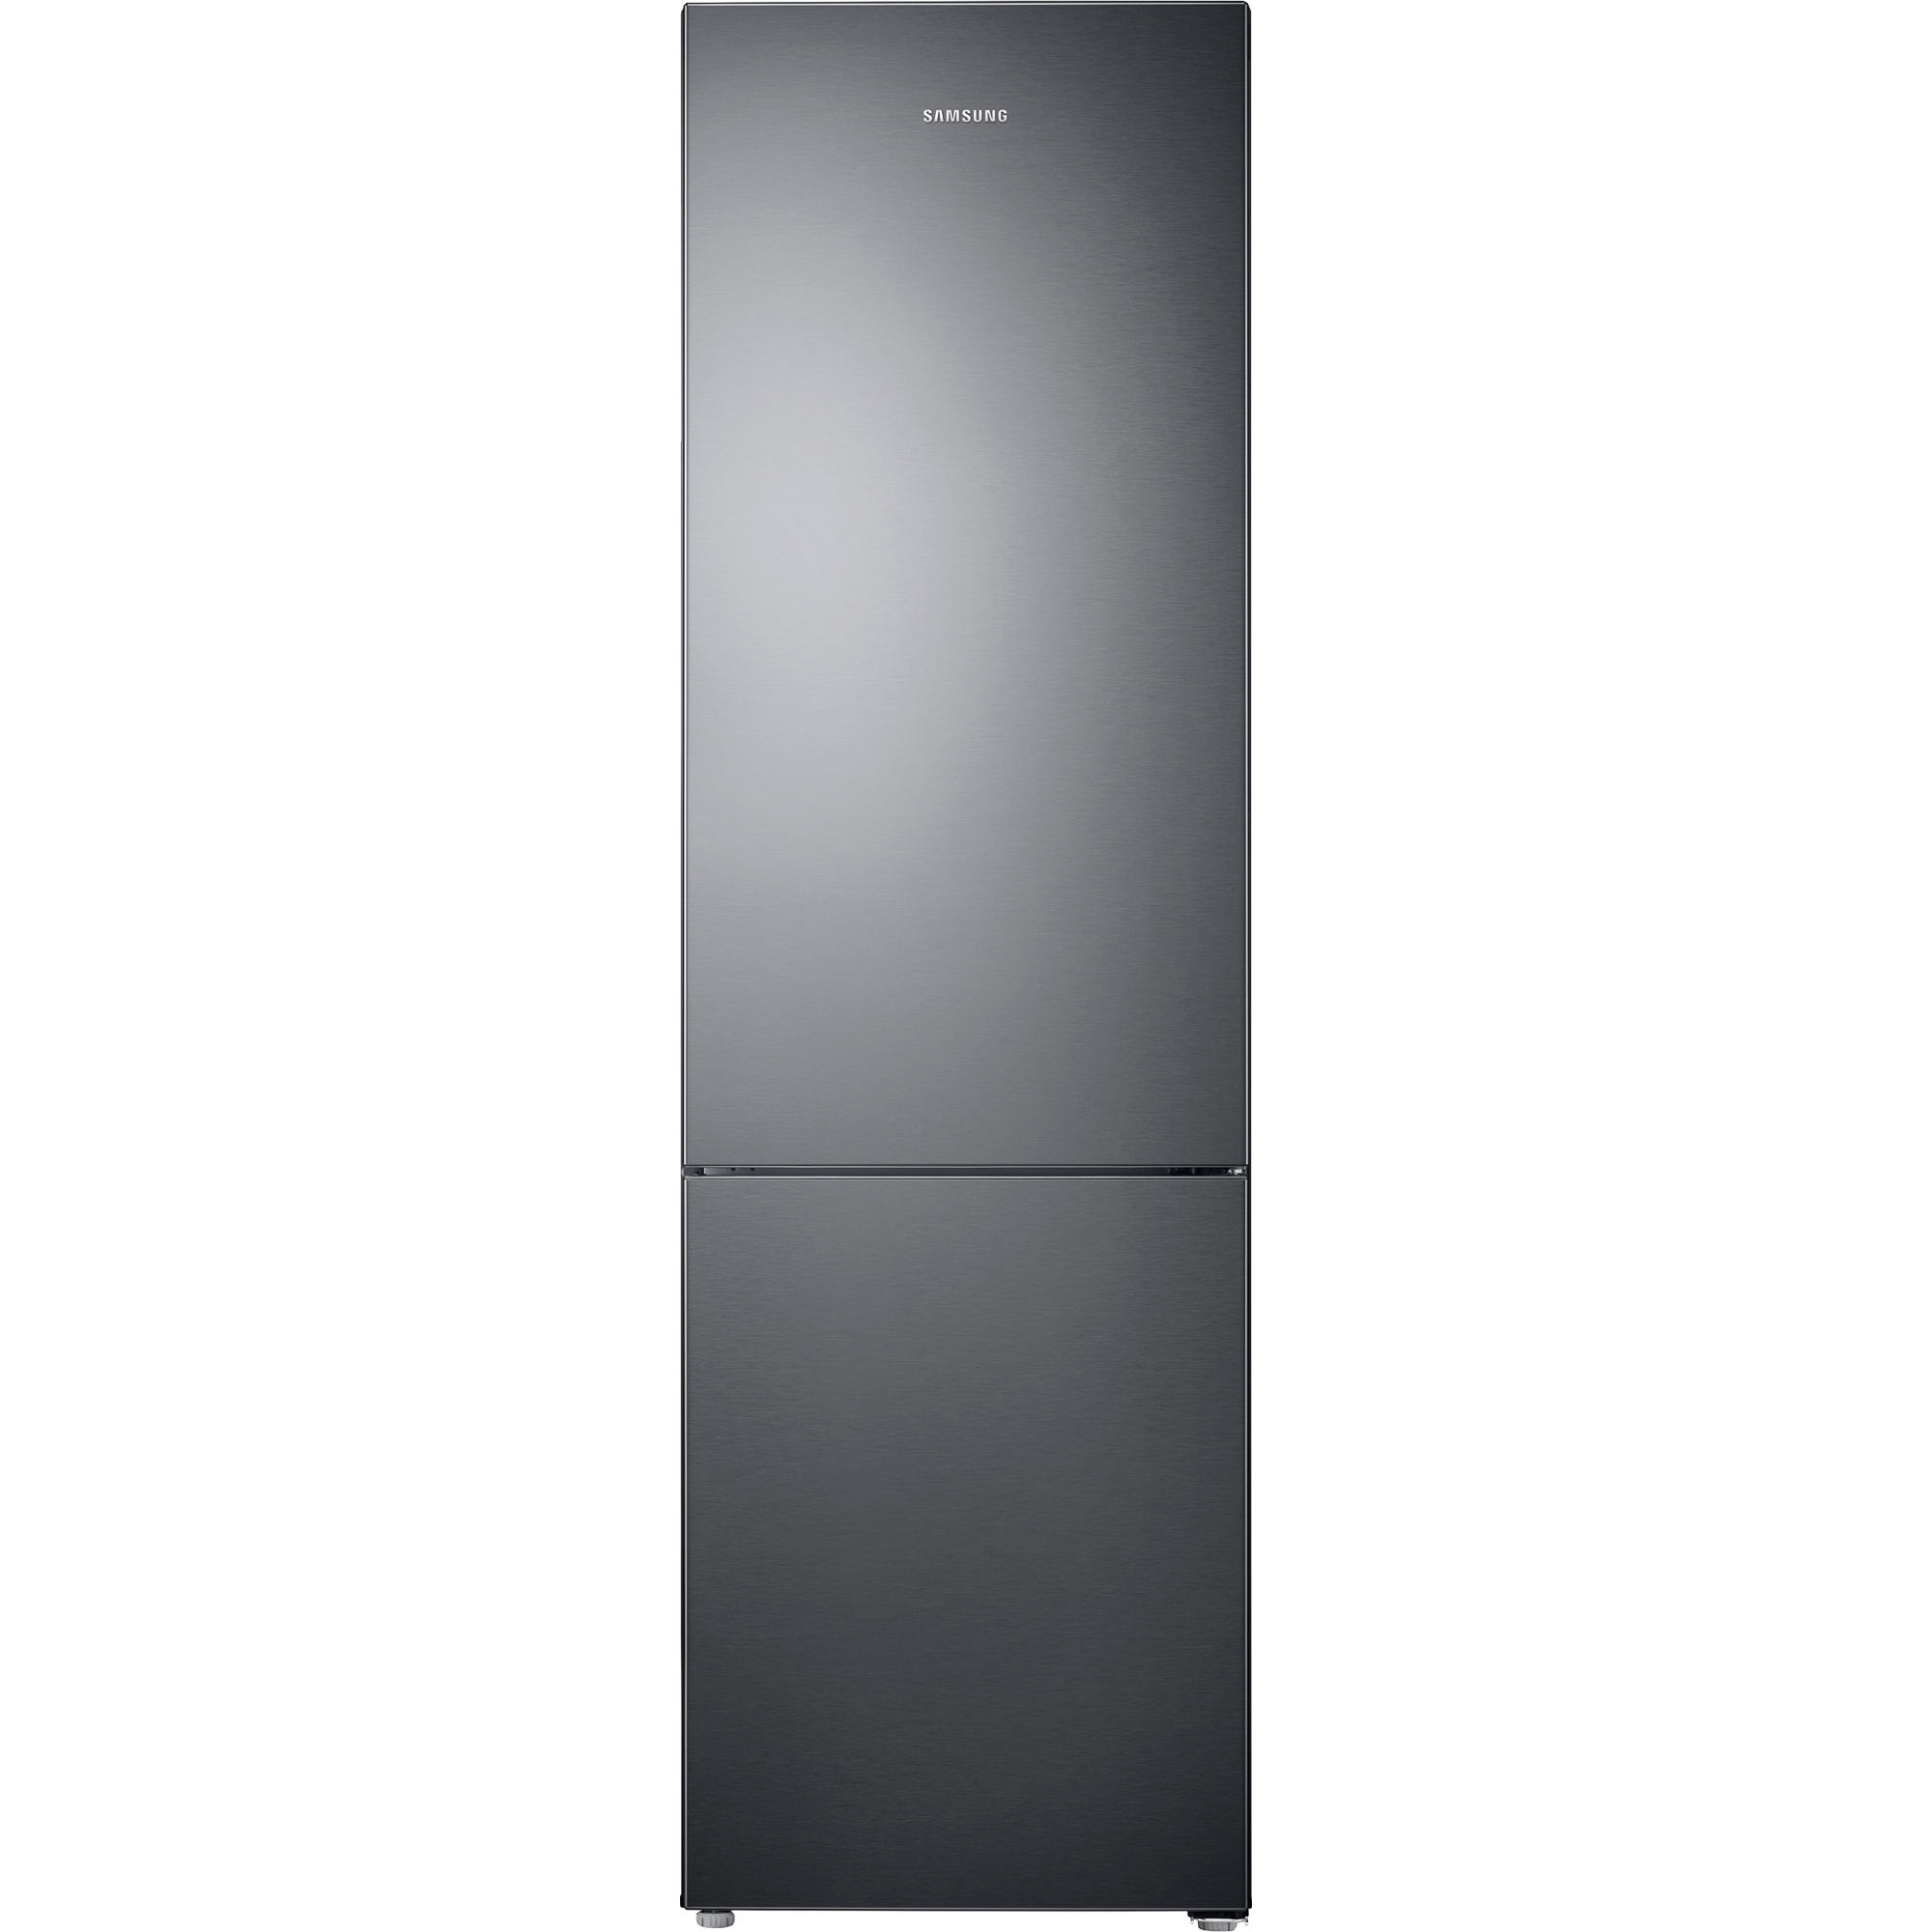 Холодильник Samsung RB37J5000B1, цвет графитовый RB37J5000B1/WT - фото 1